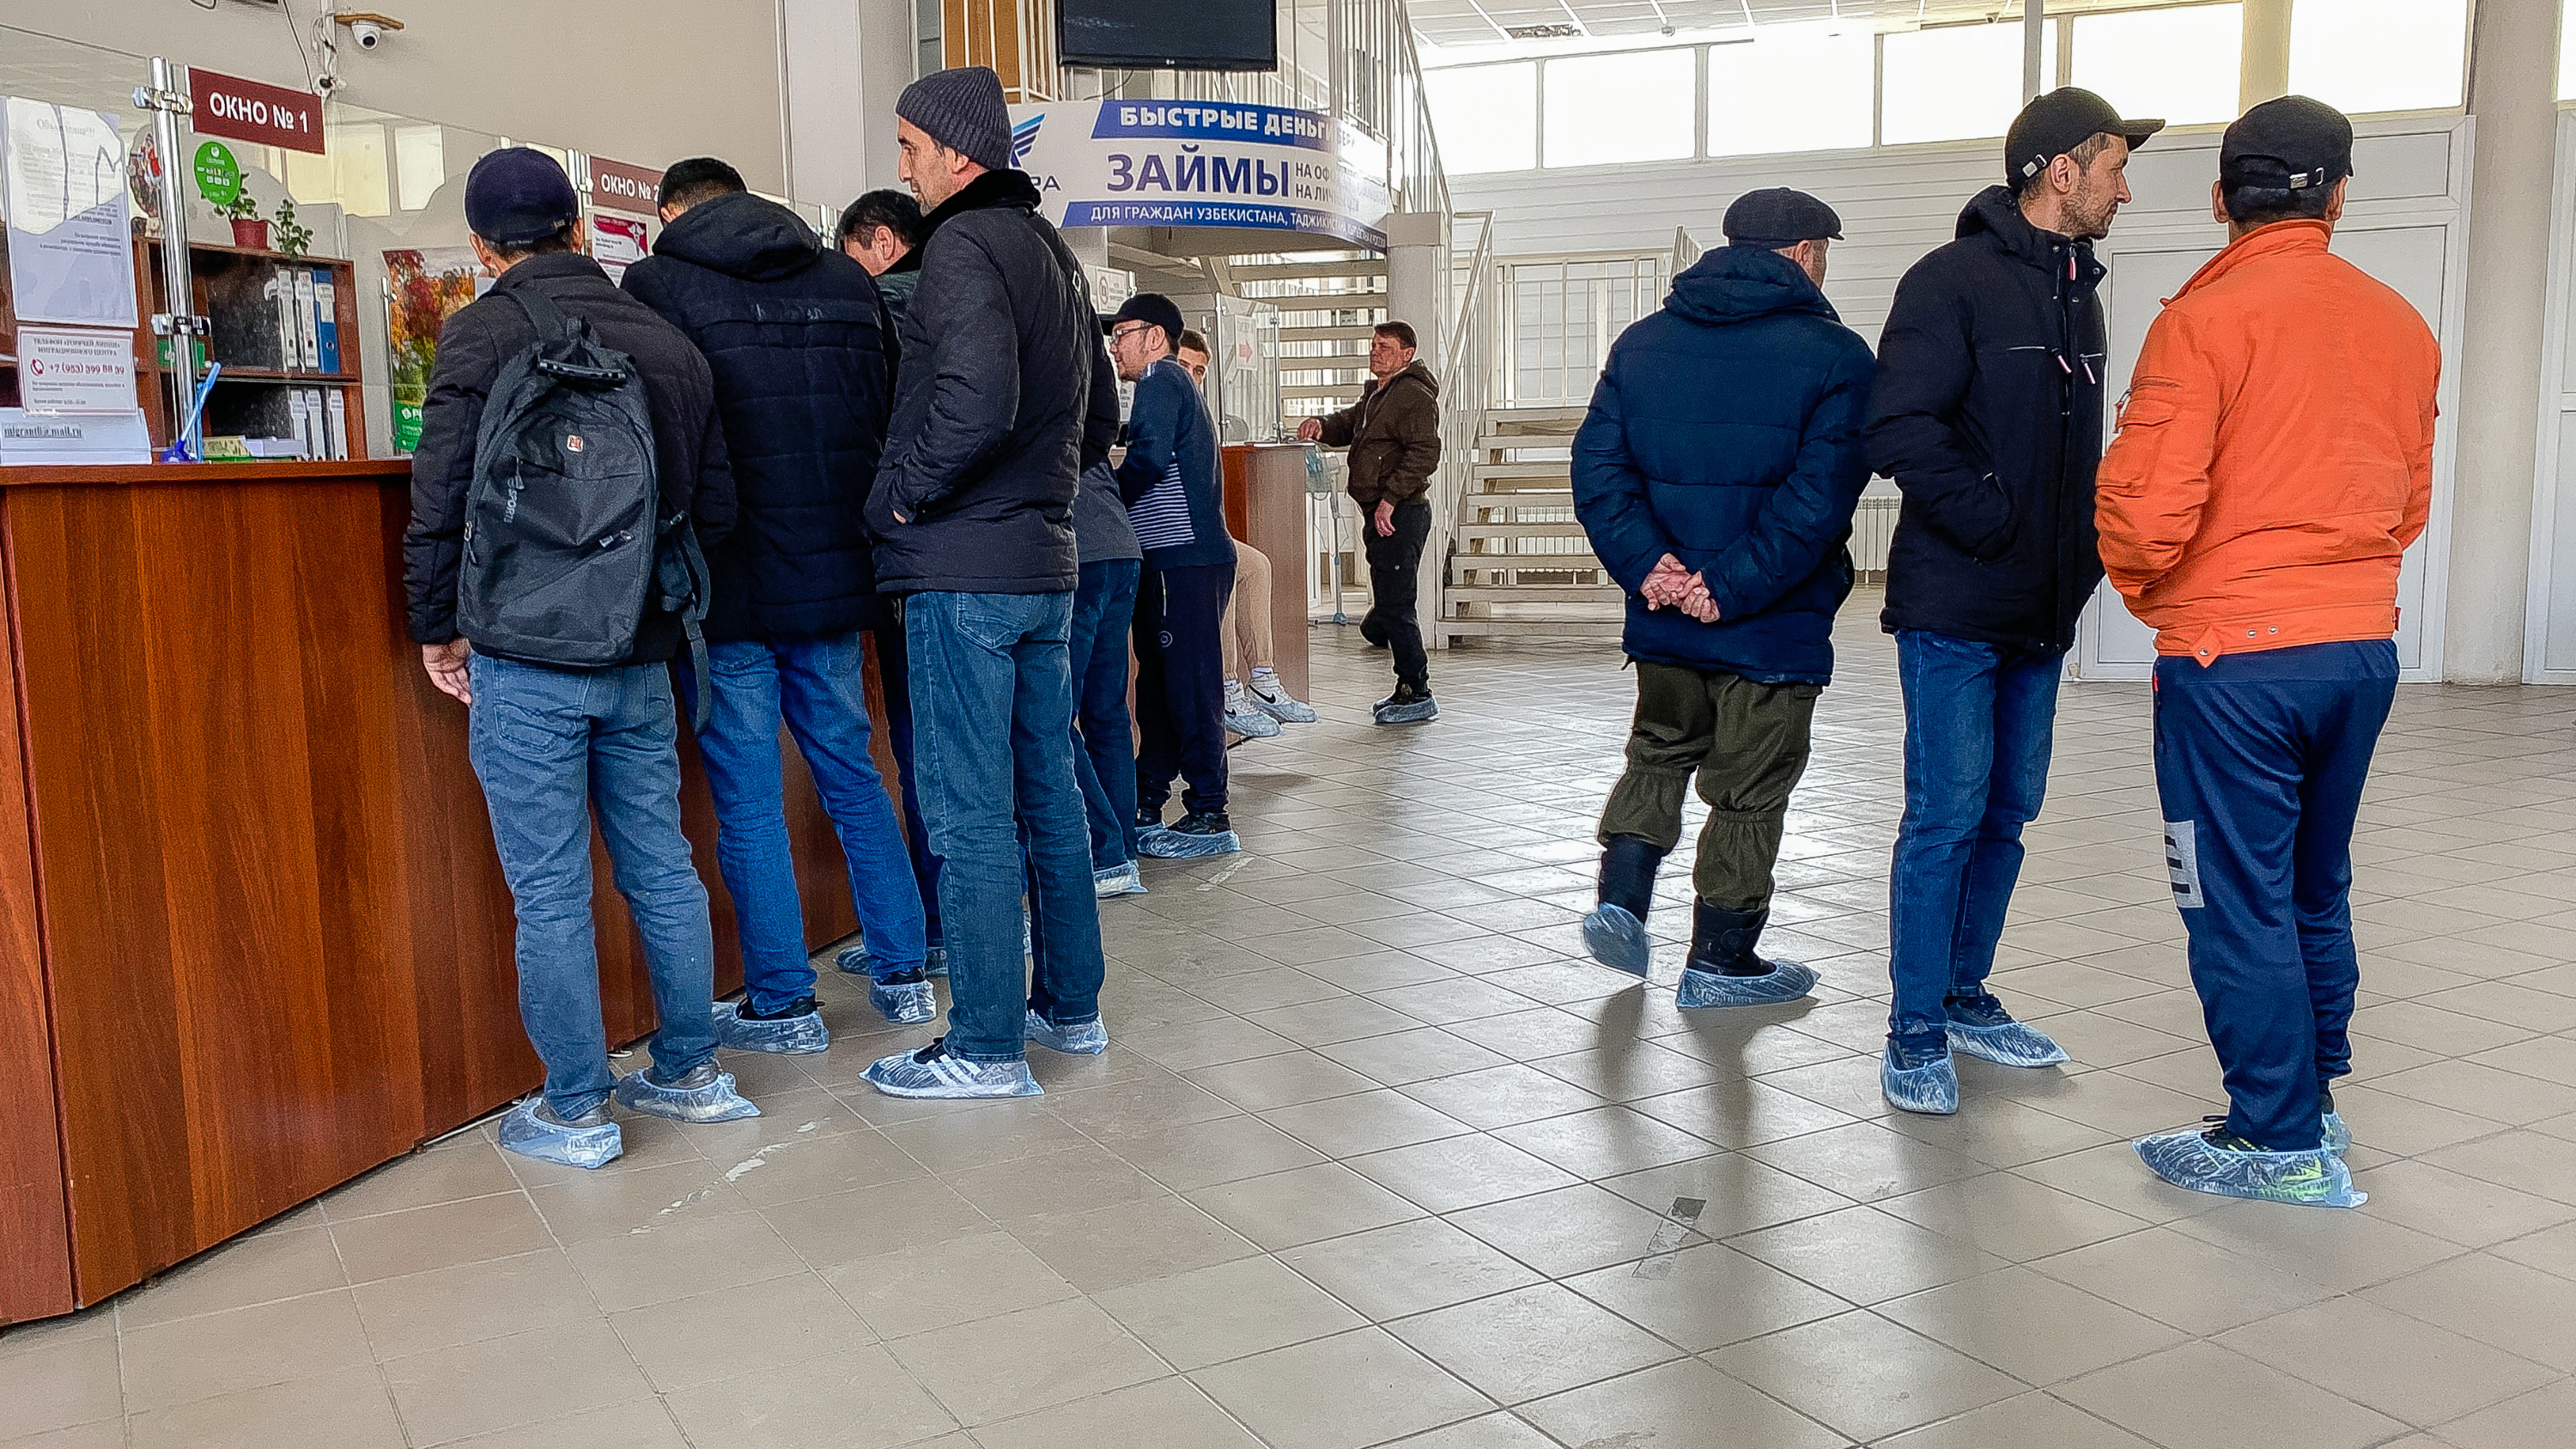 «Вы не похожа на русскую»: что происходит в омском миграционном центре после ужесточения правил для иностранцев